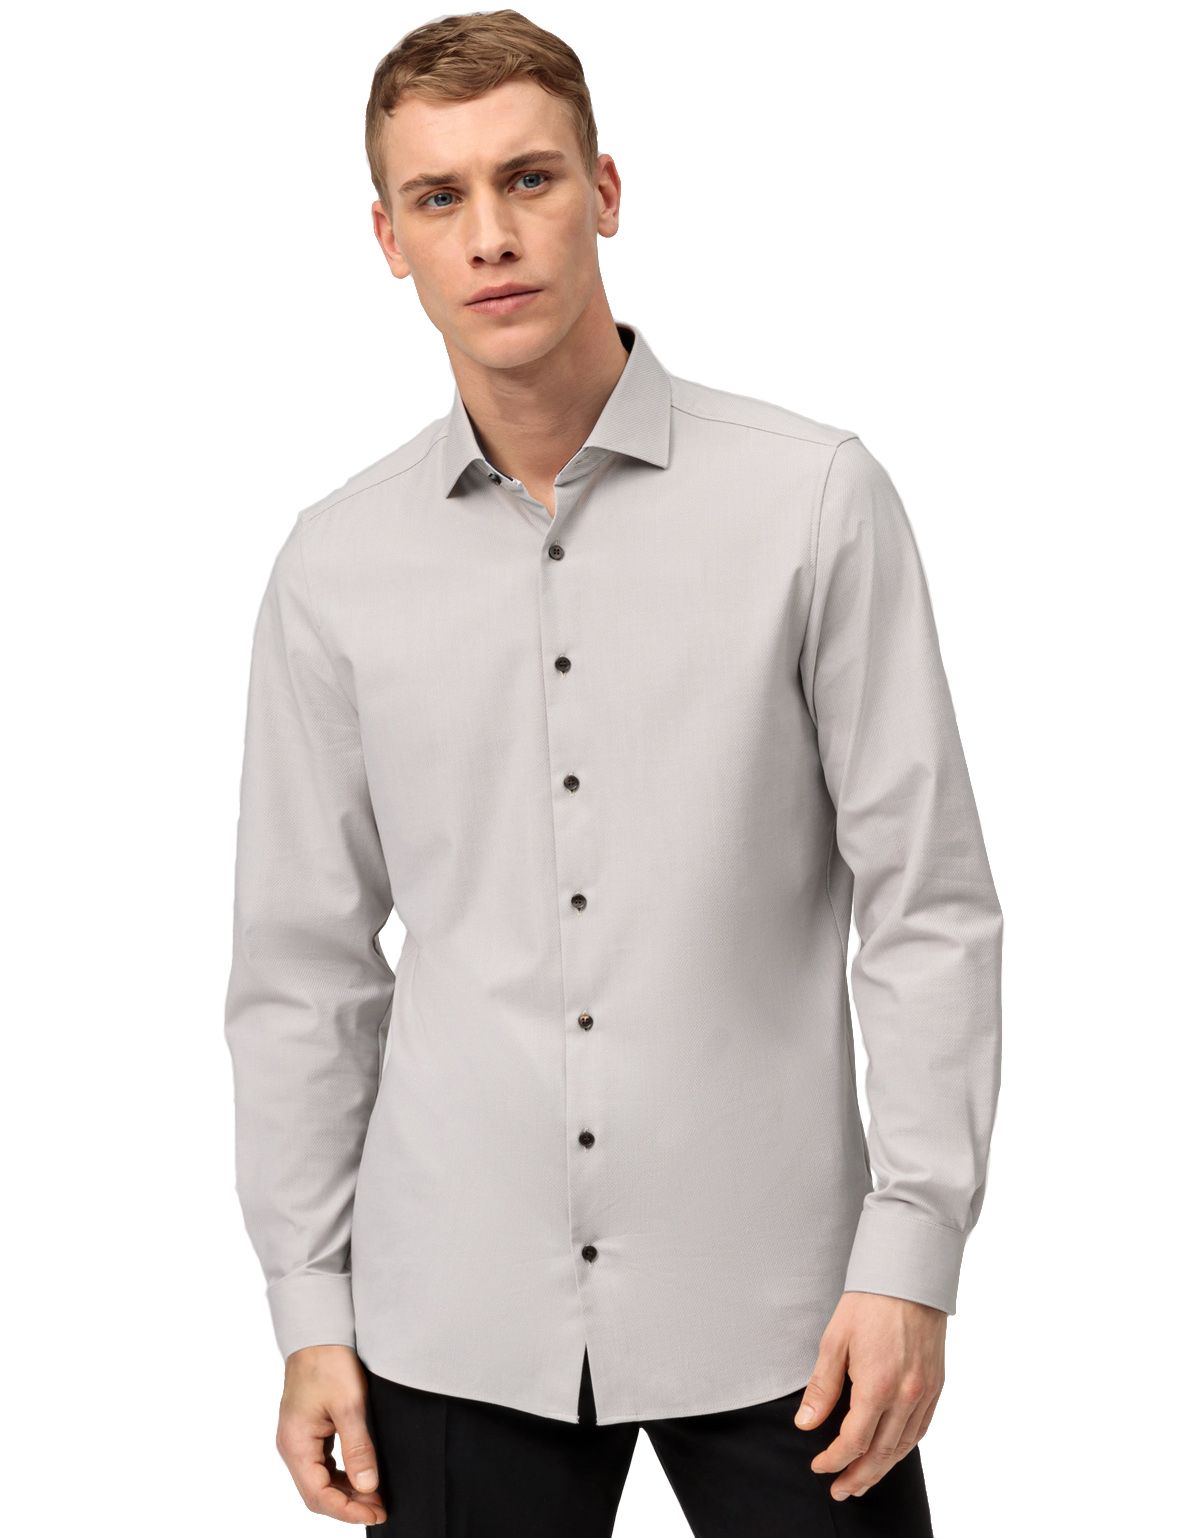 Рубашка мужская с длинным рукавом OLYMP 24/7, климат-контроль, body fit